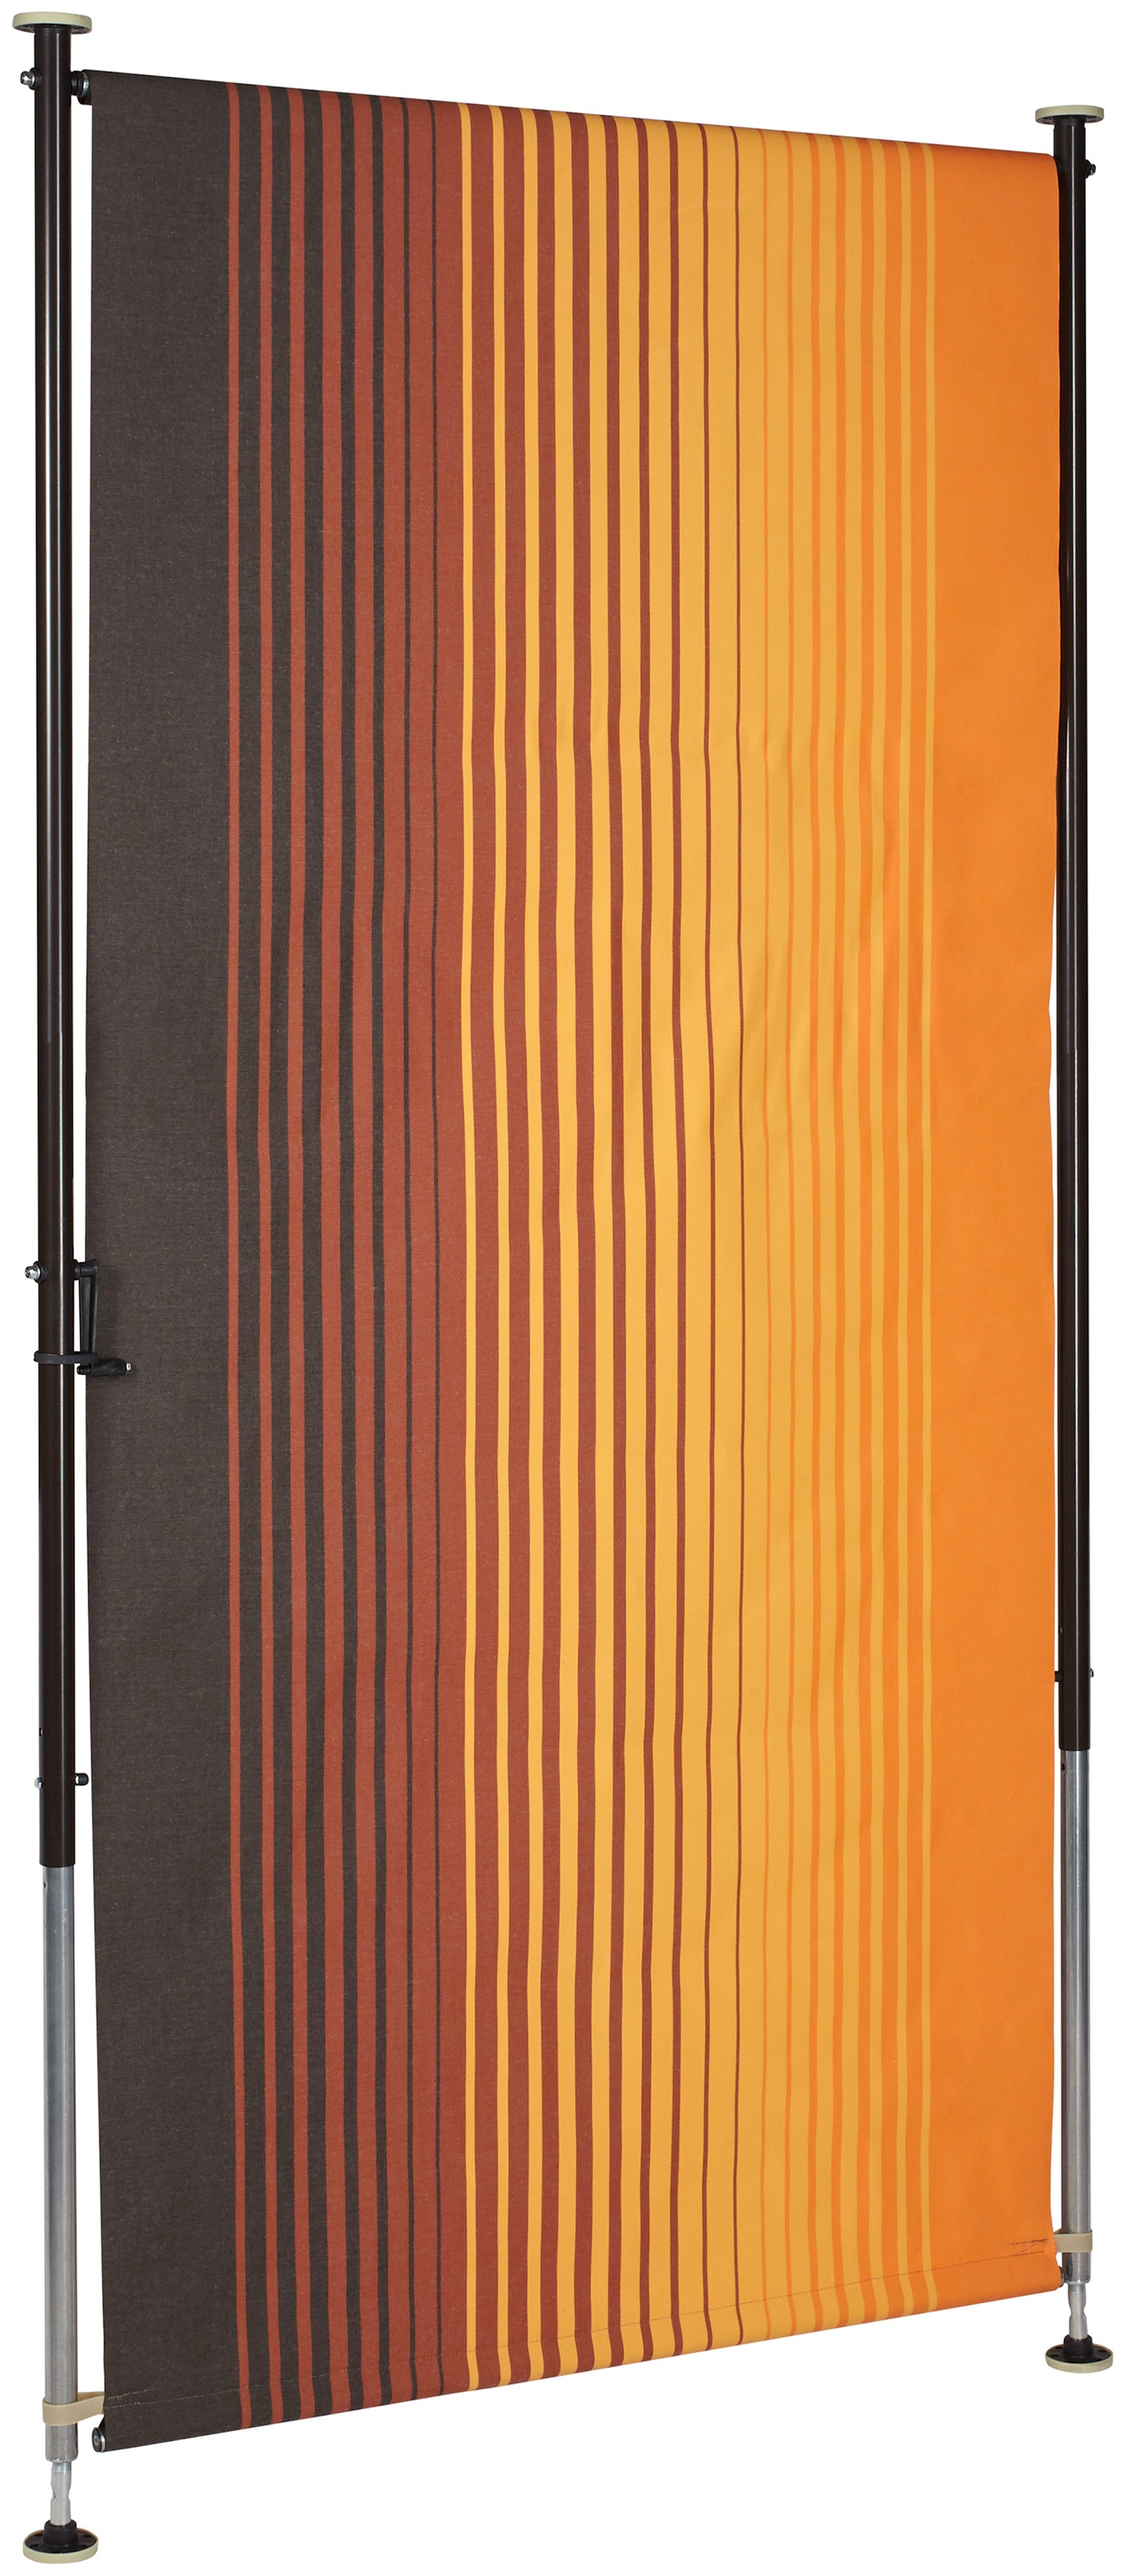 Angerer Freizeitmöbel Klemm-Senkrechtmarkise »Nr. 100«, orange/braun, BxH: 150x225 cm